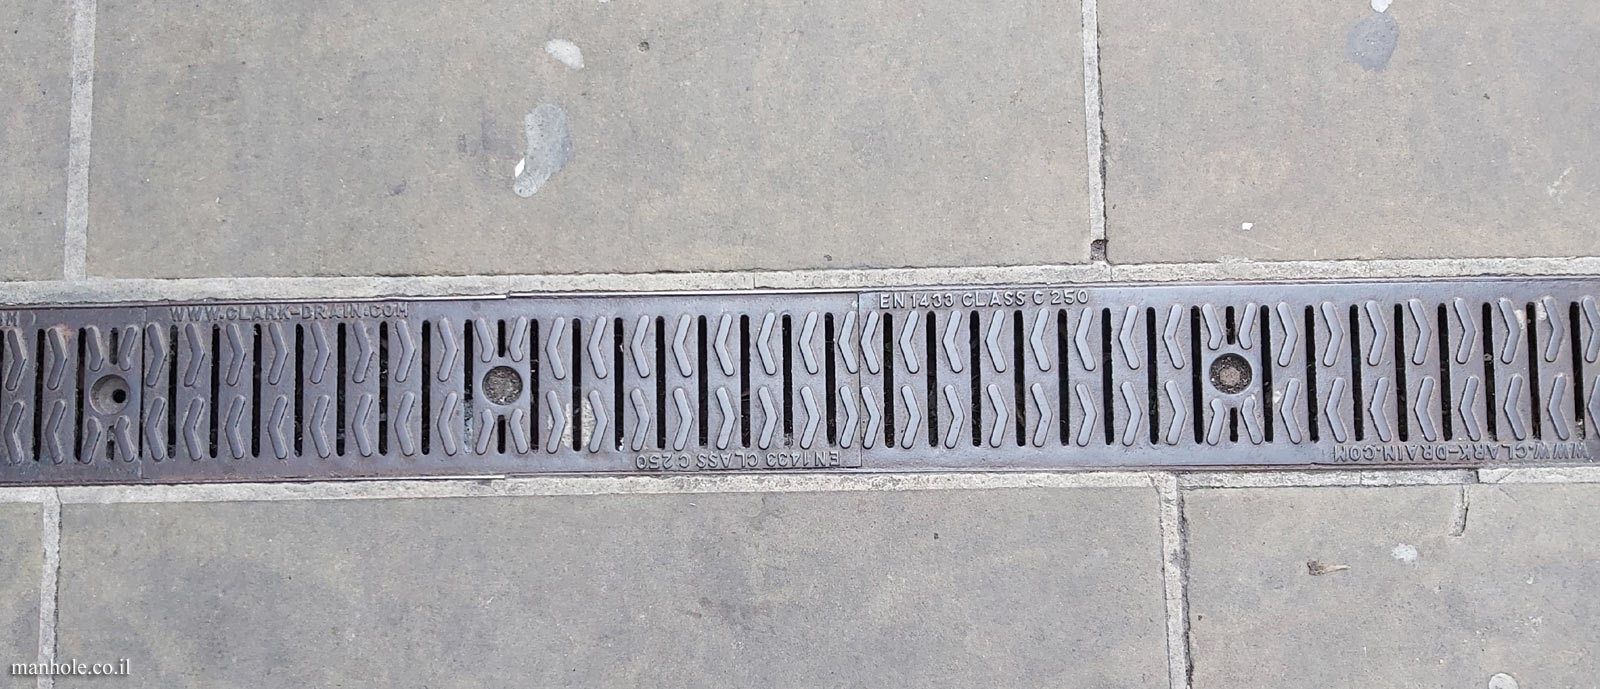 Oxford - Pavement drainage